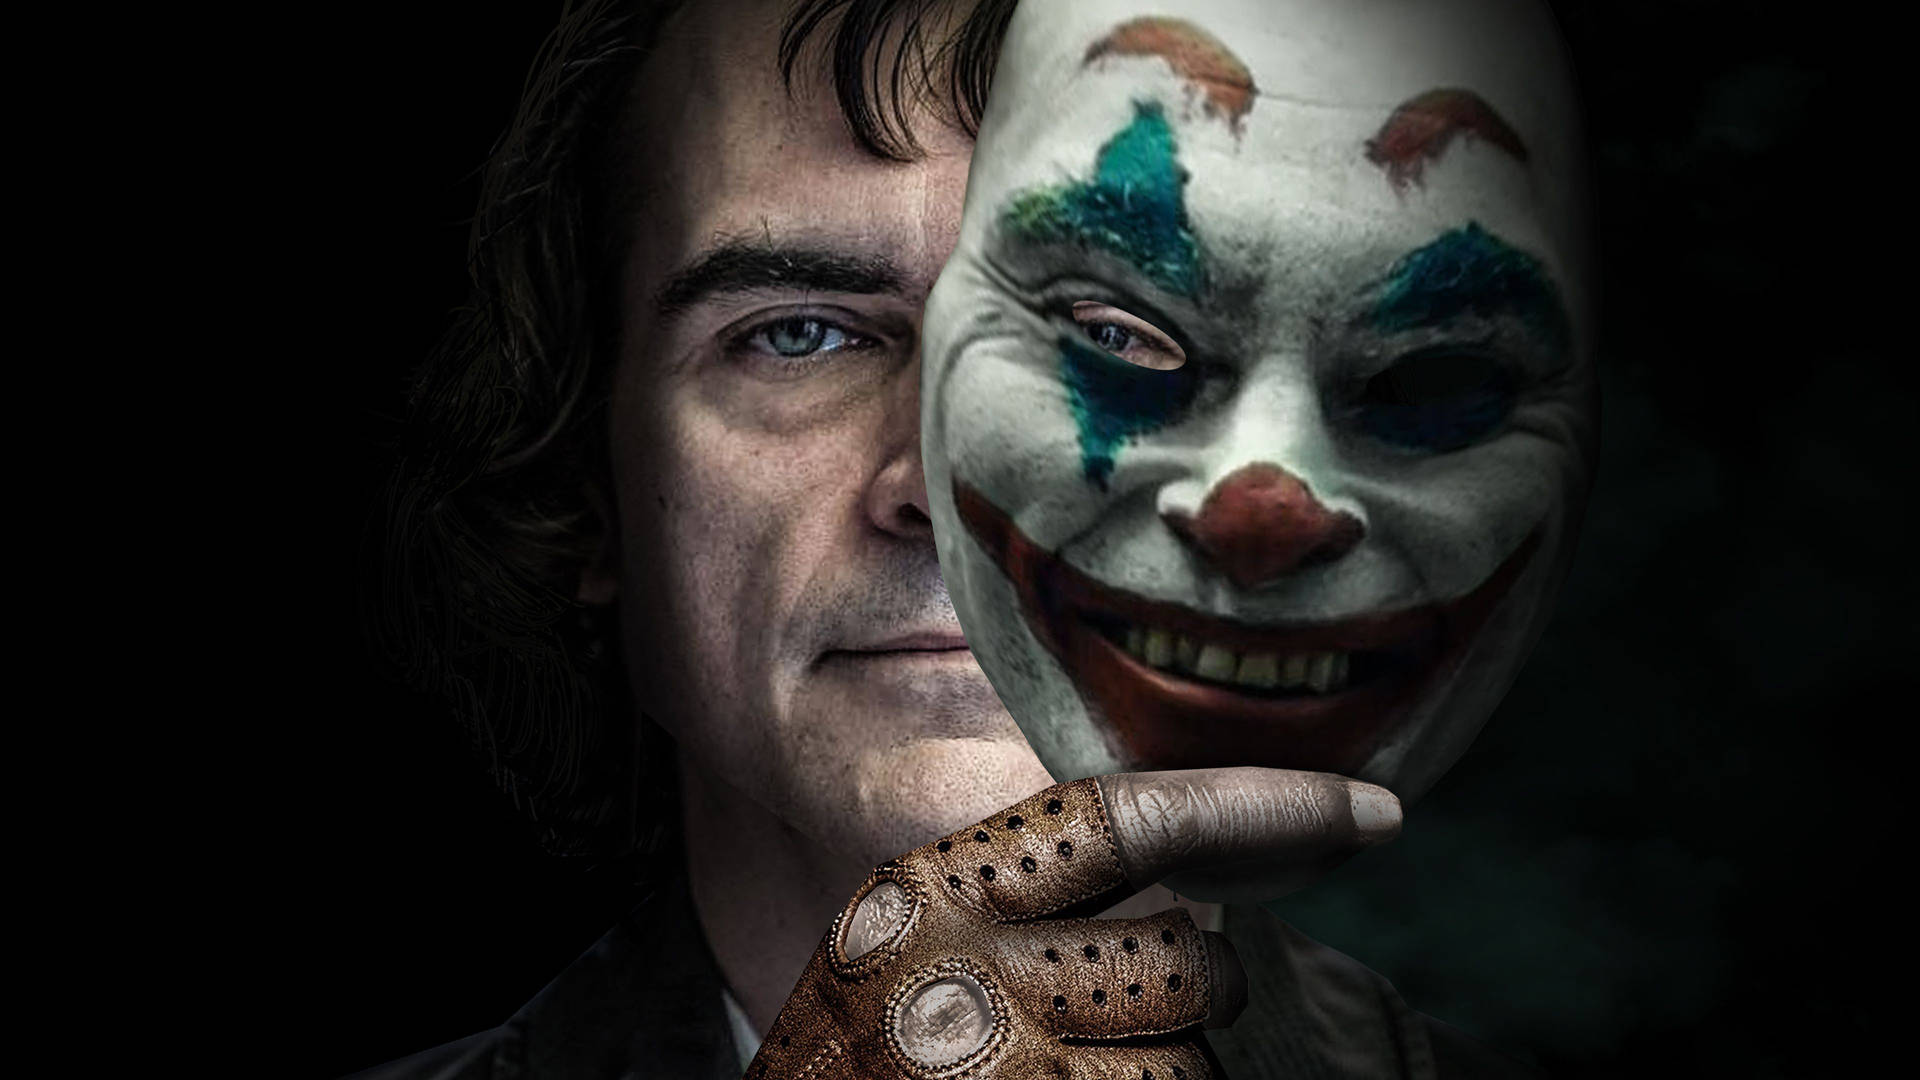 Arthur Holding Clown Mask Joker 2019